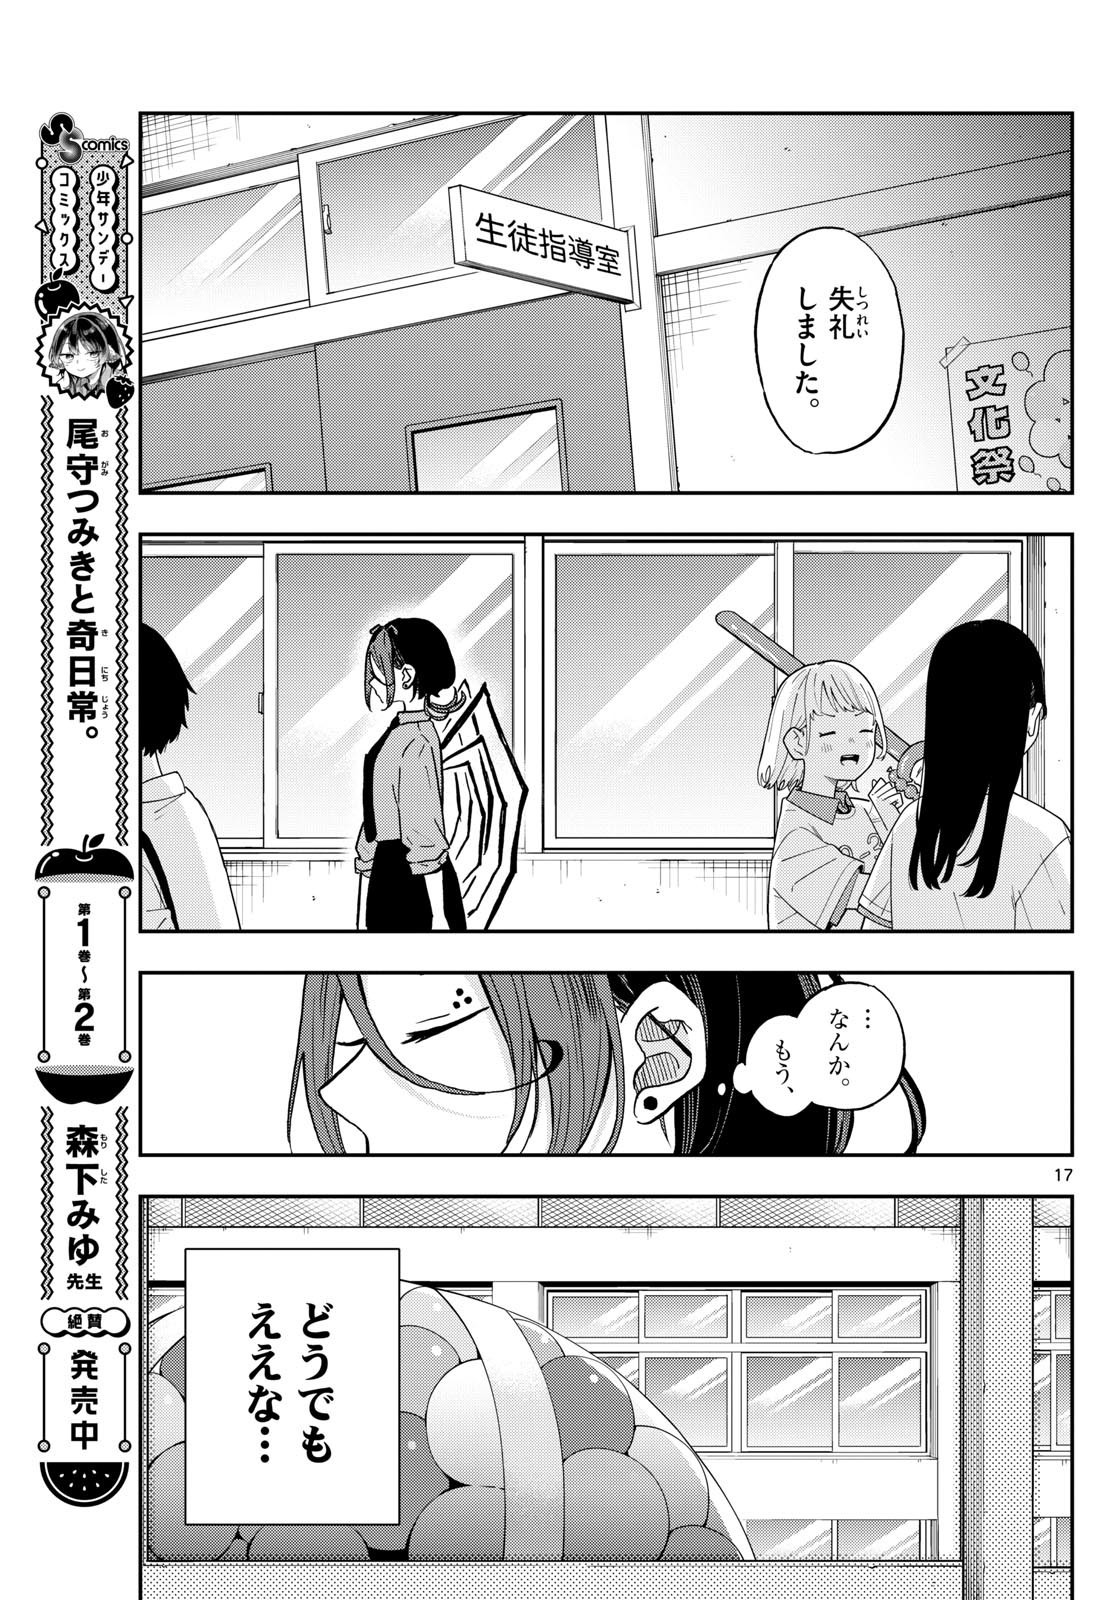 Omori Tsumiki to Kinichijou. - Chapter 31 - Page 17